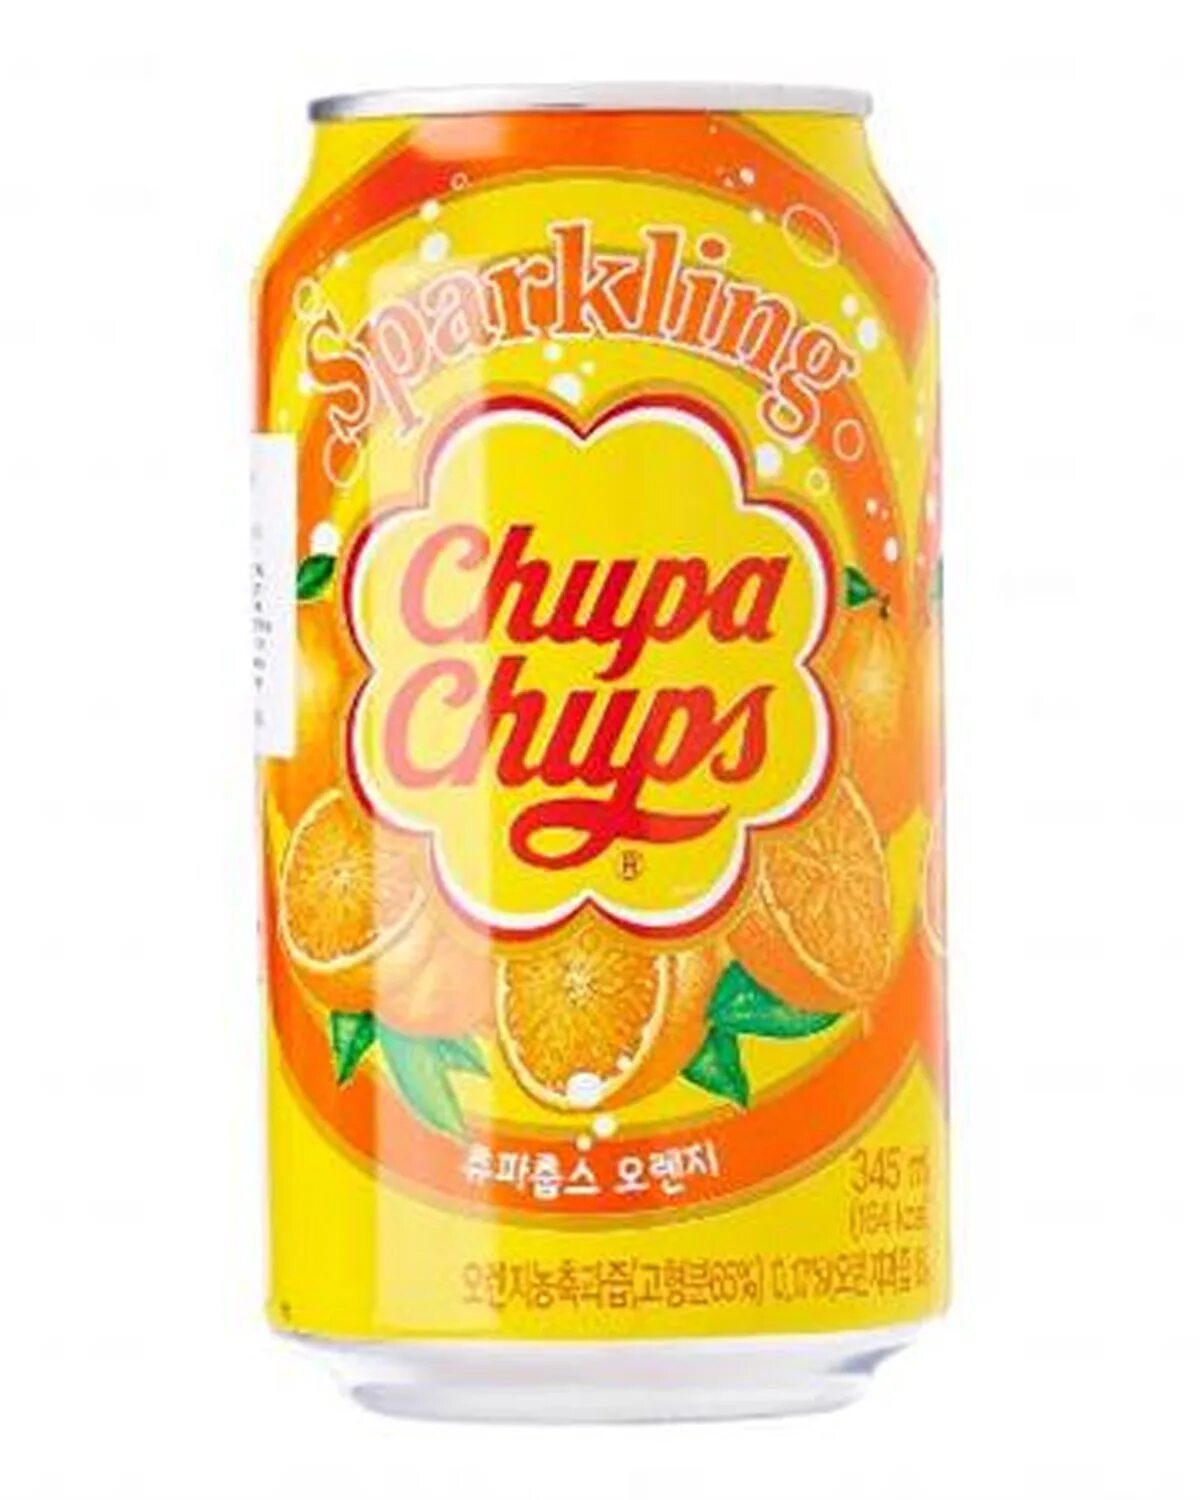 Chupa chups вкусы. Напиток "chupa chups" 345мл. Газировка Чупа Чупс апельсин. Chupa chups газировка вкусы. Напиток б/а chupa chups Mango 345ml /24шт СГ.